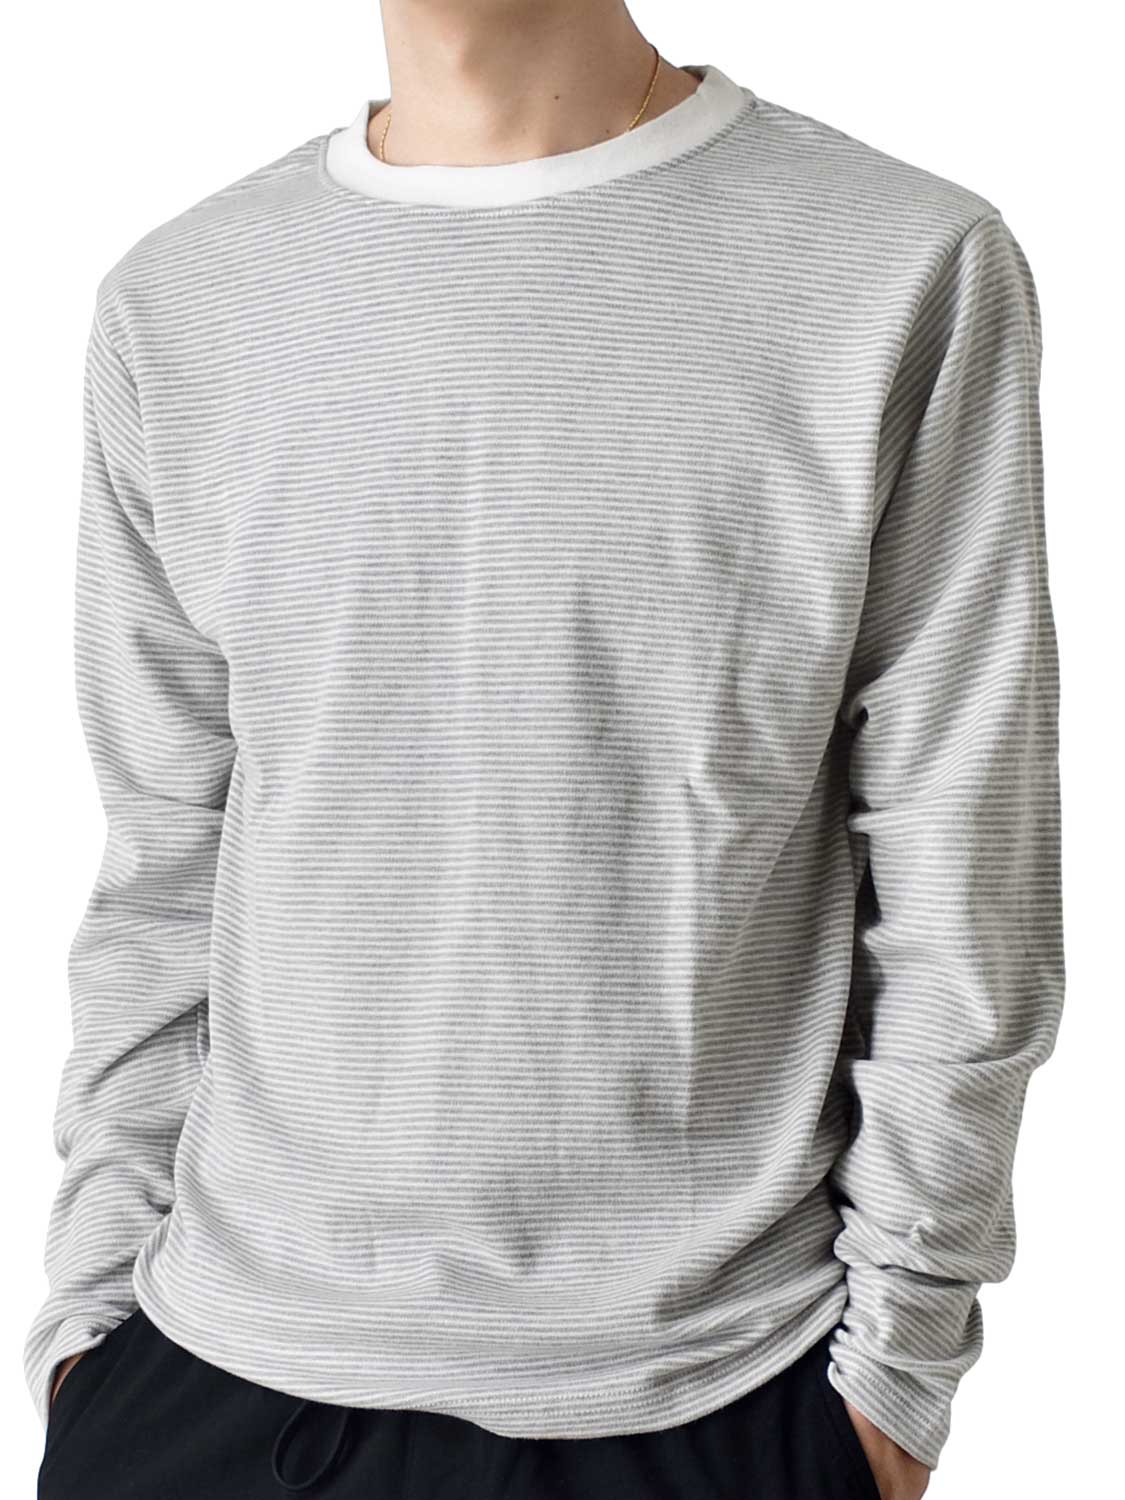 長袖Tシャツ メンズ カットソー 微起毛  暖か 防寒 送料無料 通販YC